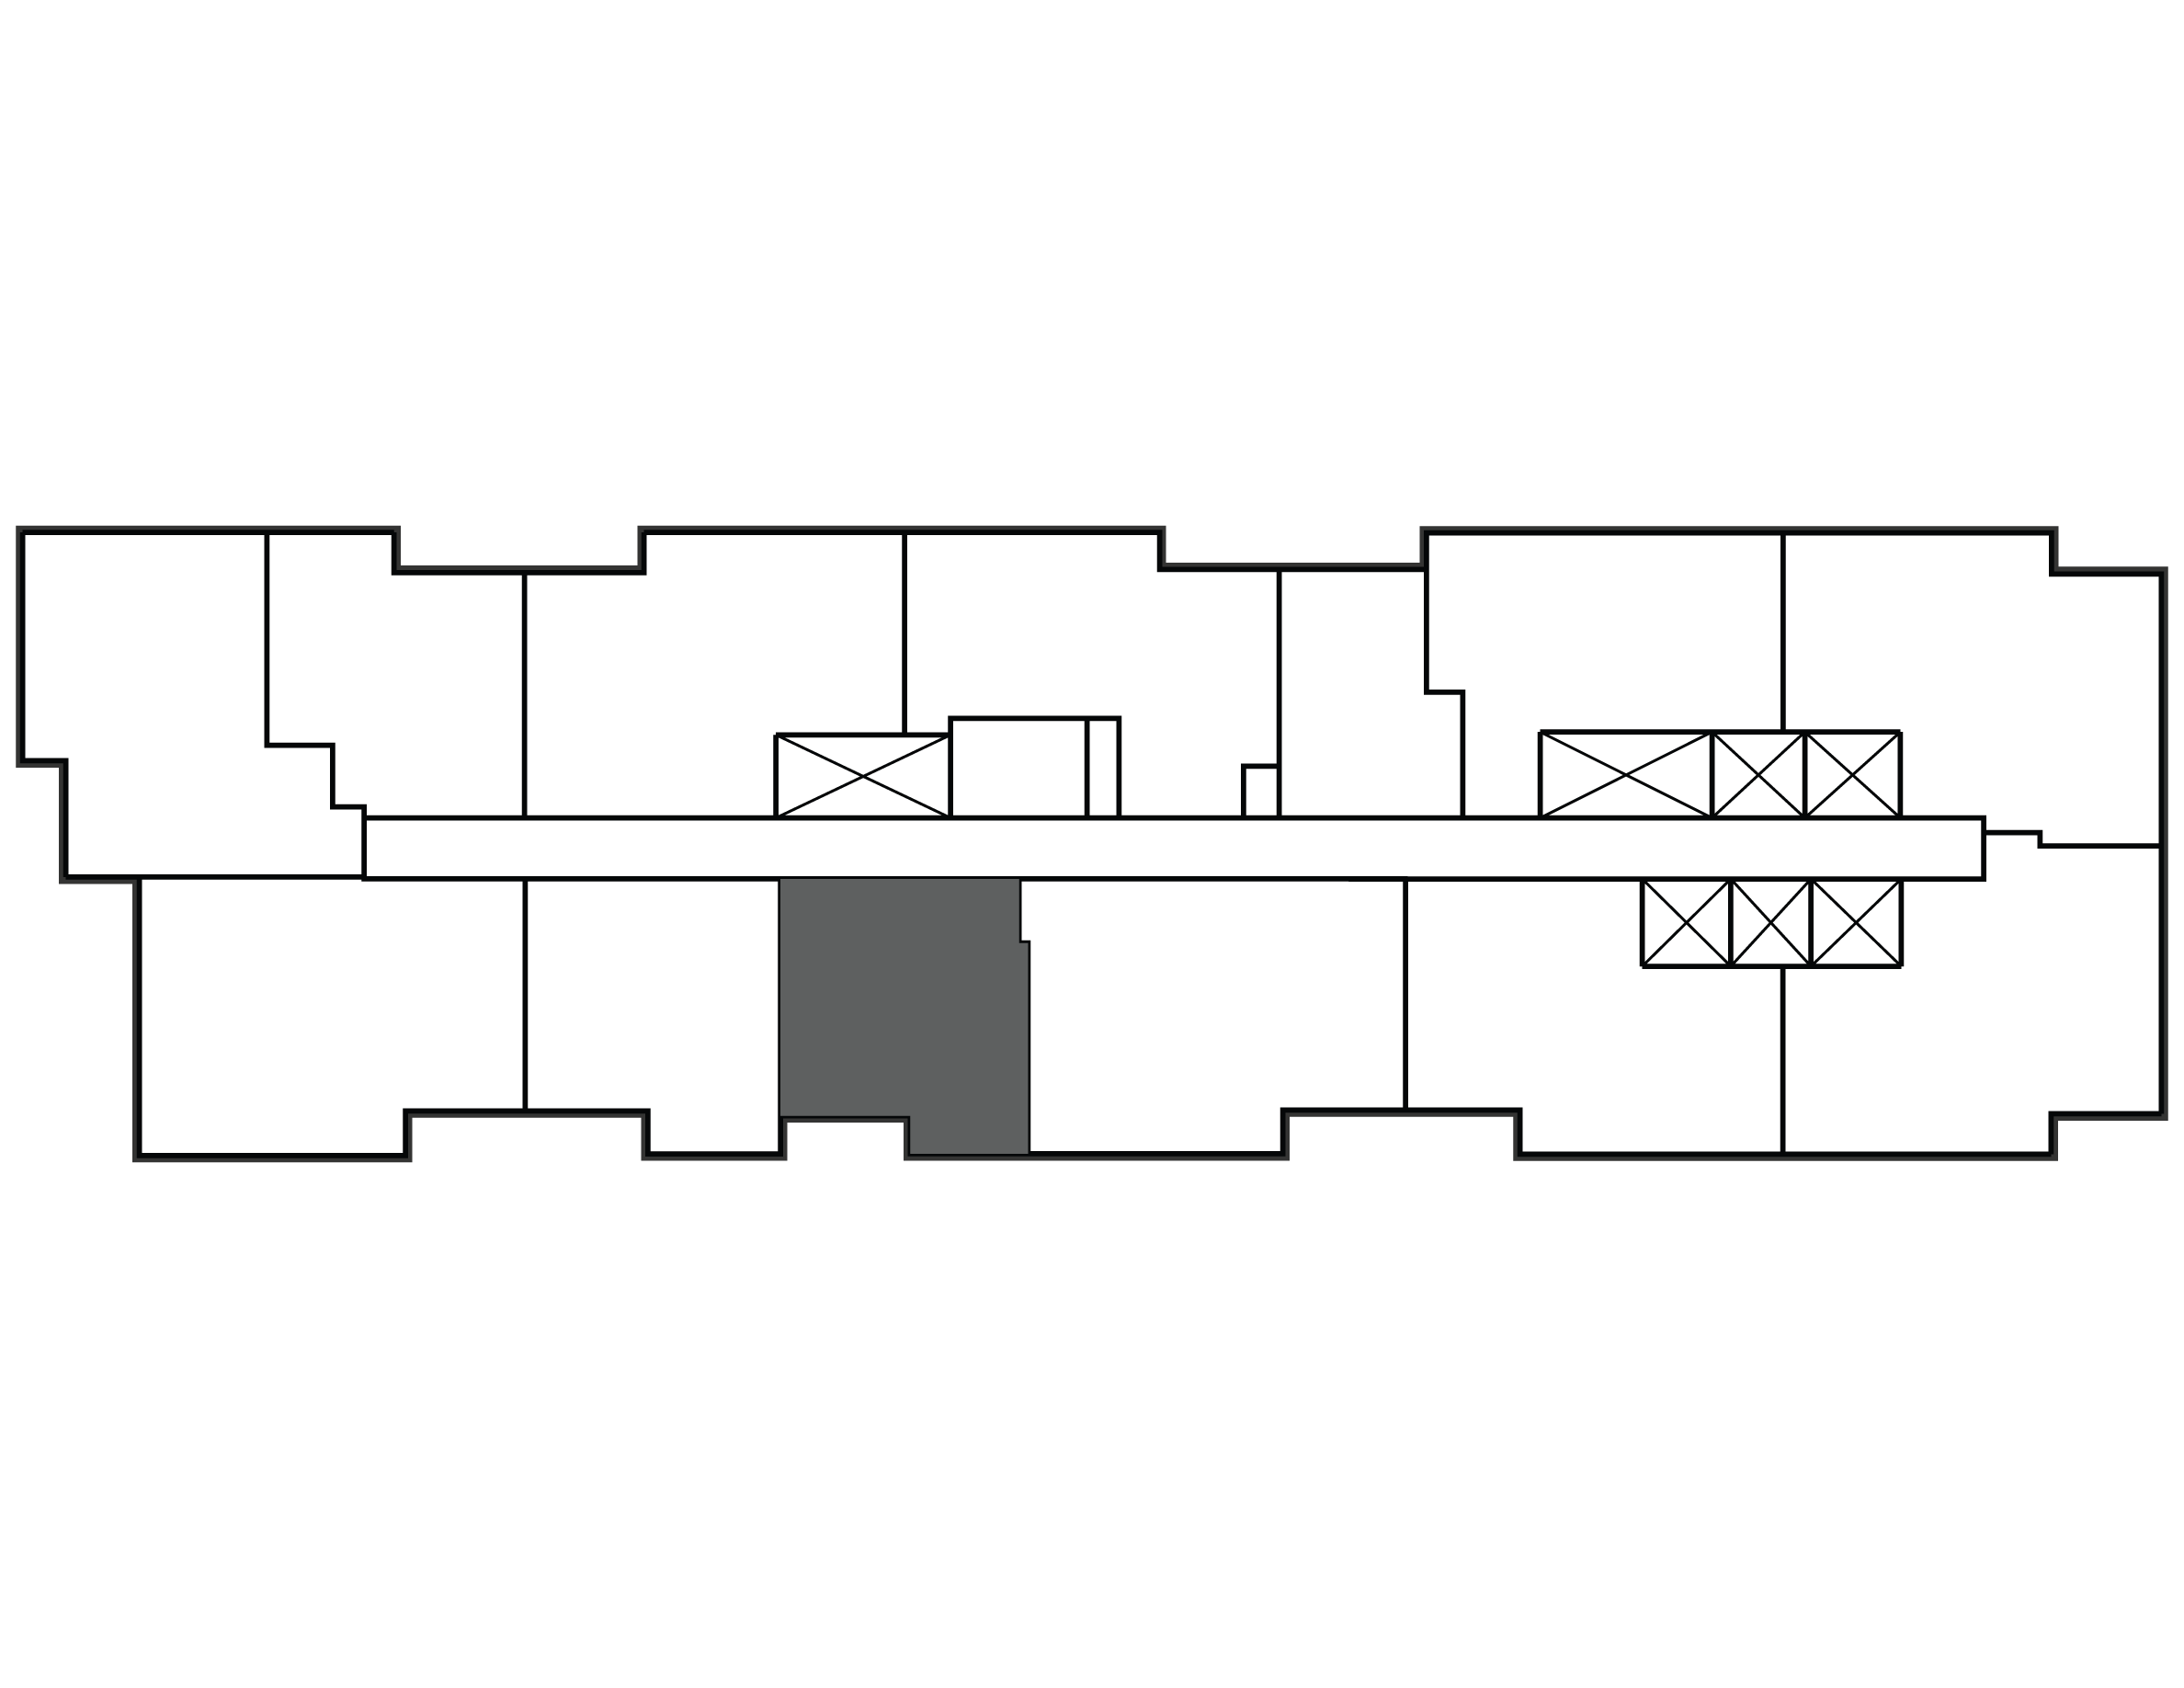 Key plan image of apartment 2504